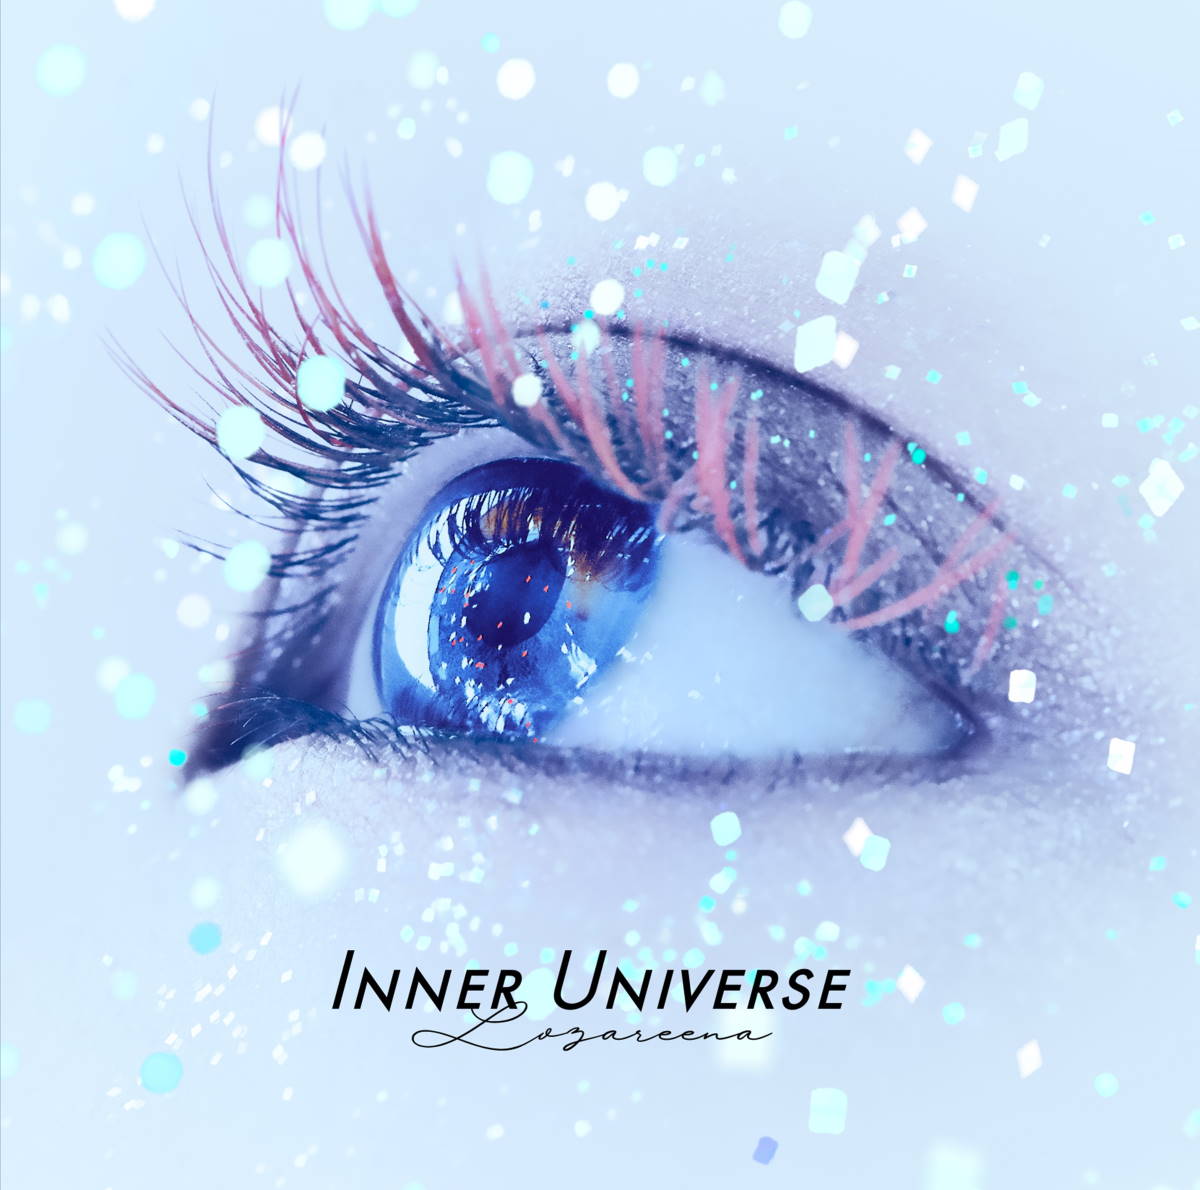 『ロザリーナ - 何になりたくて、』収録の『INNER UNIVERSE』ジャケット